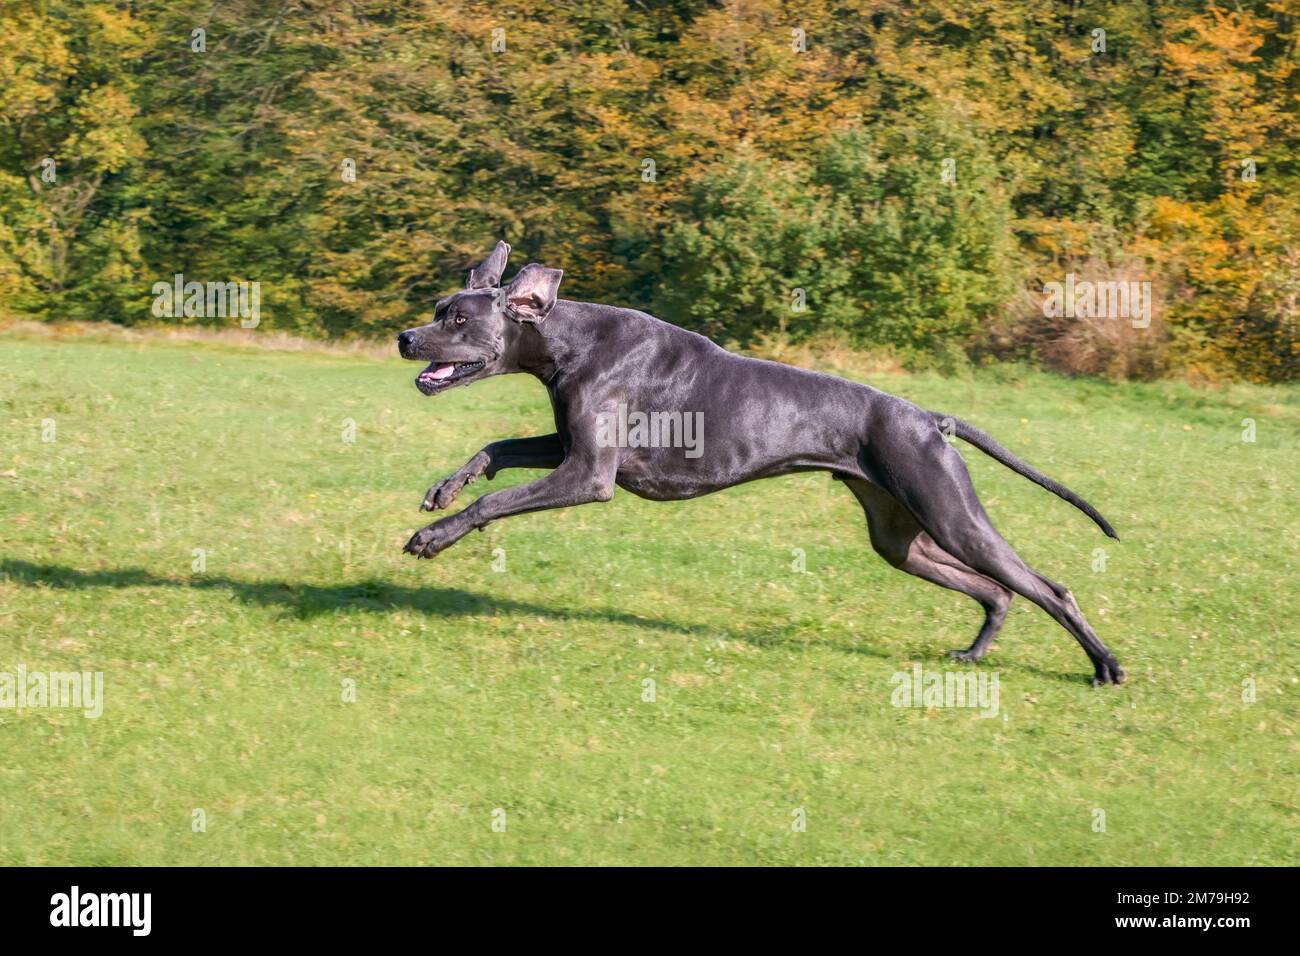 Blue Great Dane, una delle razze di cani più grandi, maschio, che corre giocosamente e potente attraverso un prato verde erba in autunno, Germania Foto Stock